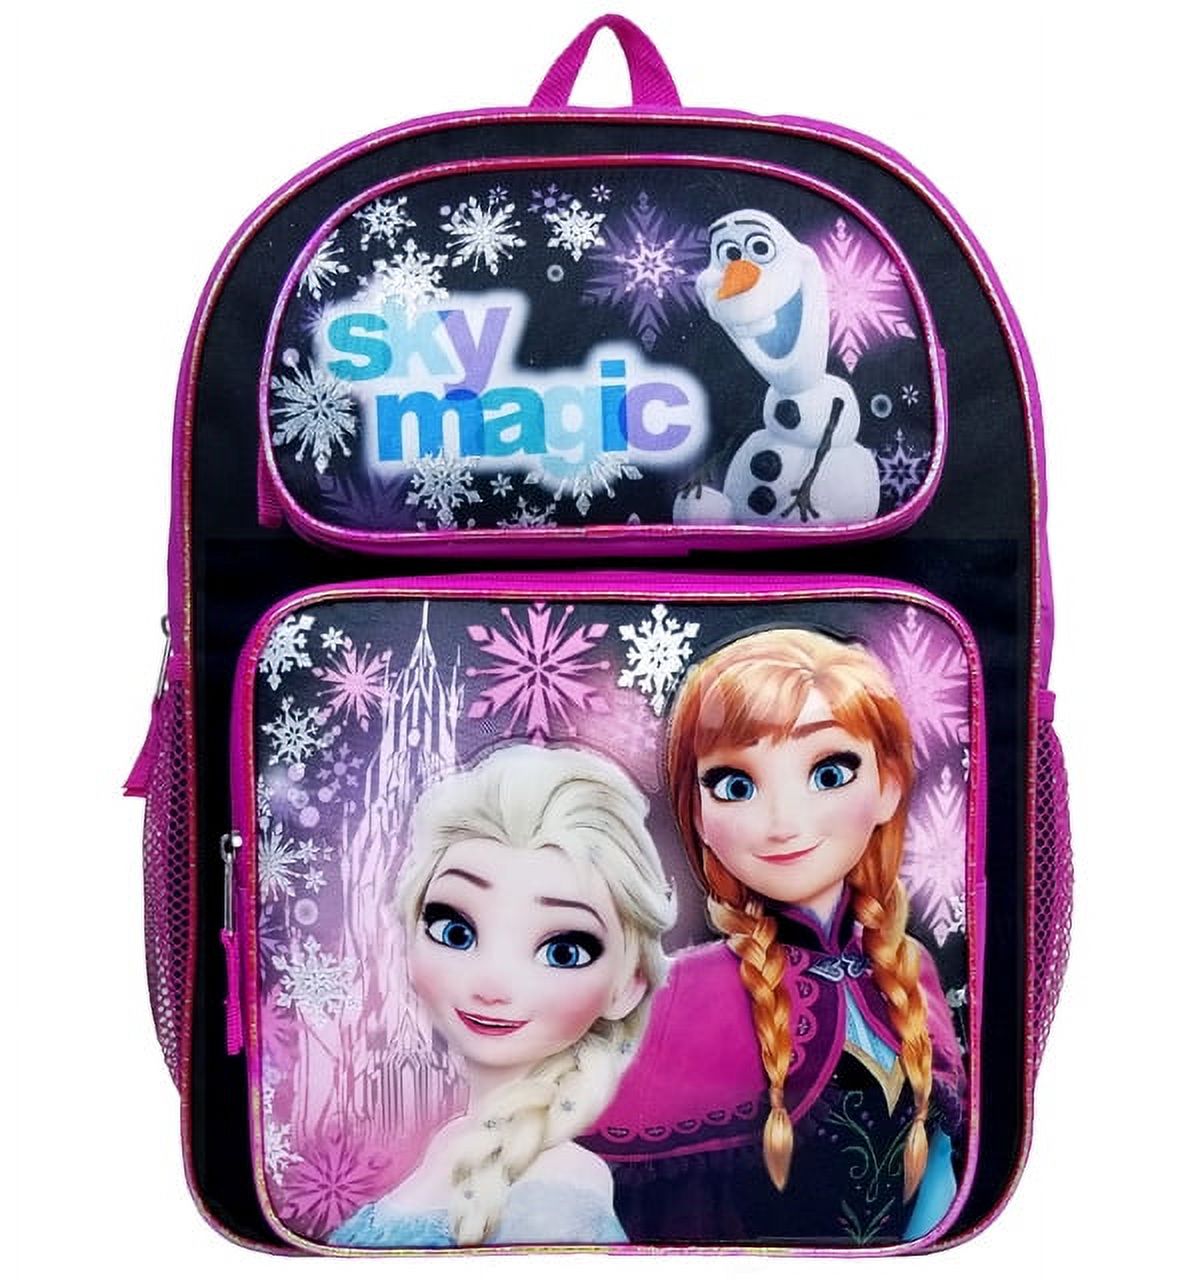 Disney Frozen Sky Magic Black Girls Large Backpack/School Book Bag for Kids - image 1 of 3